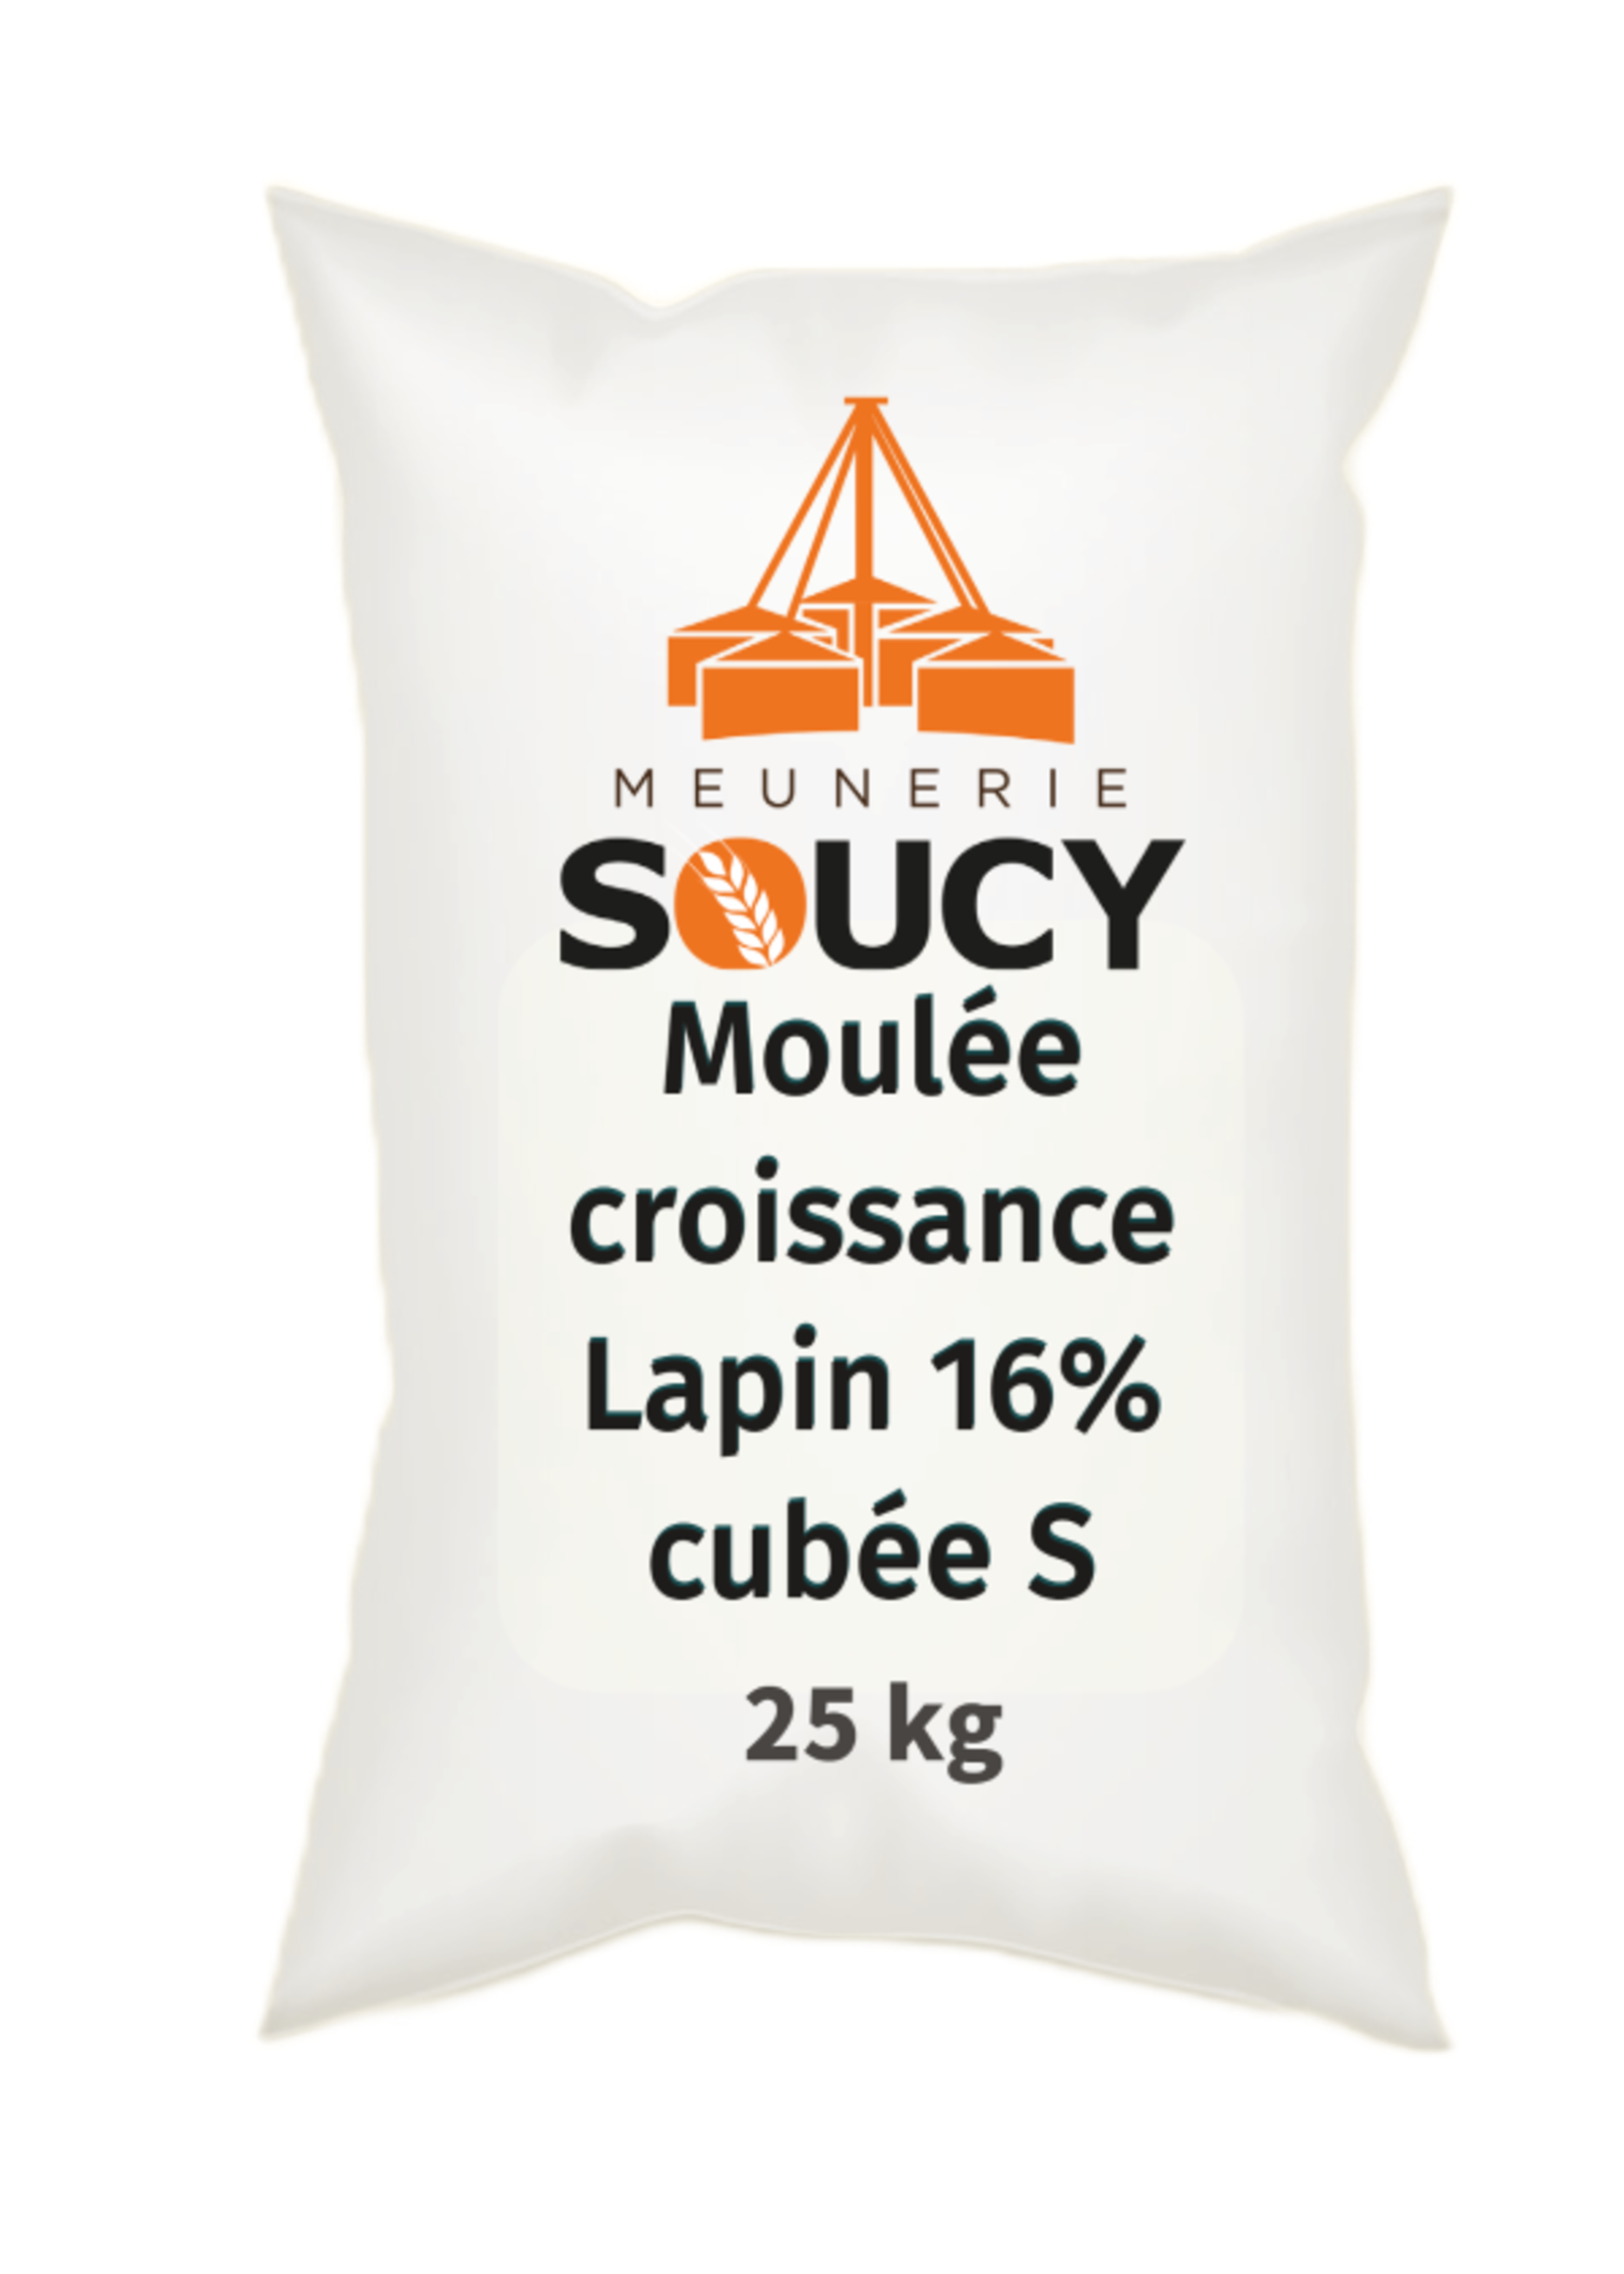 Soucy Moulée Croissance lapin 16% PB, cubée S, 25 kg